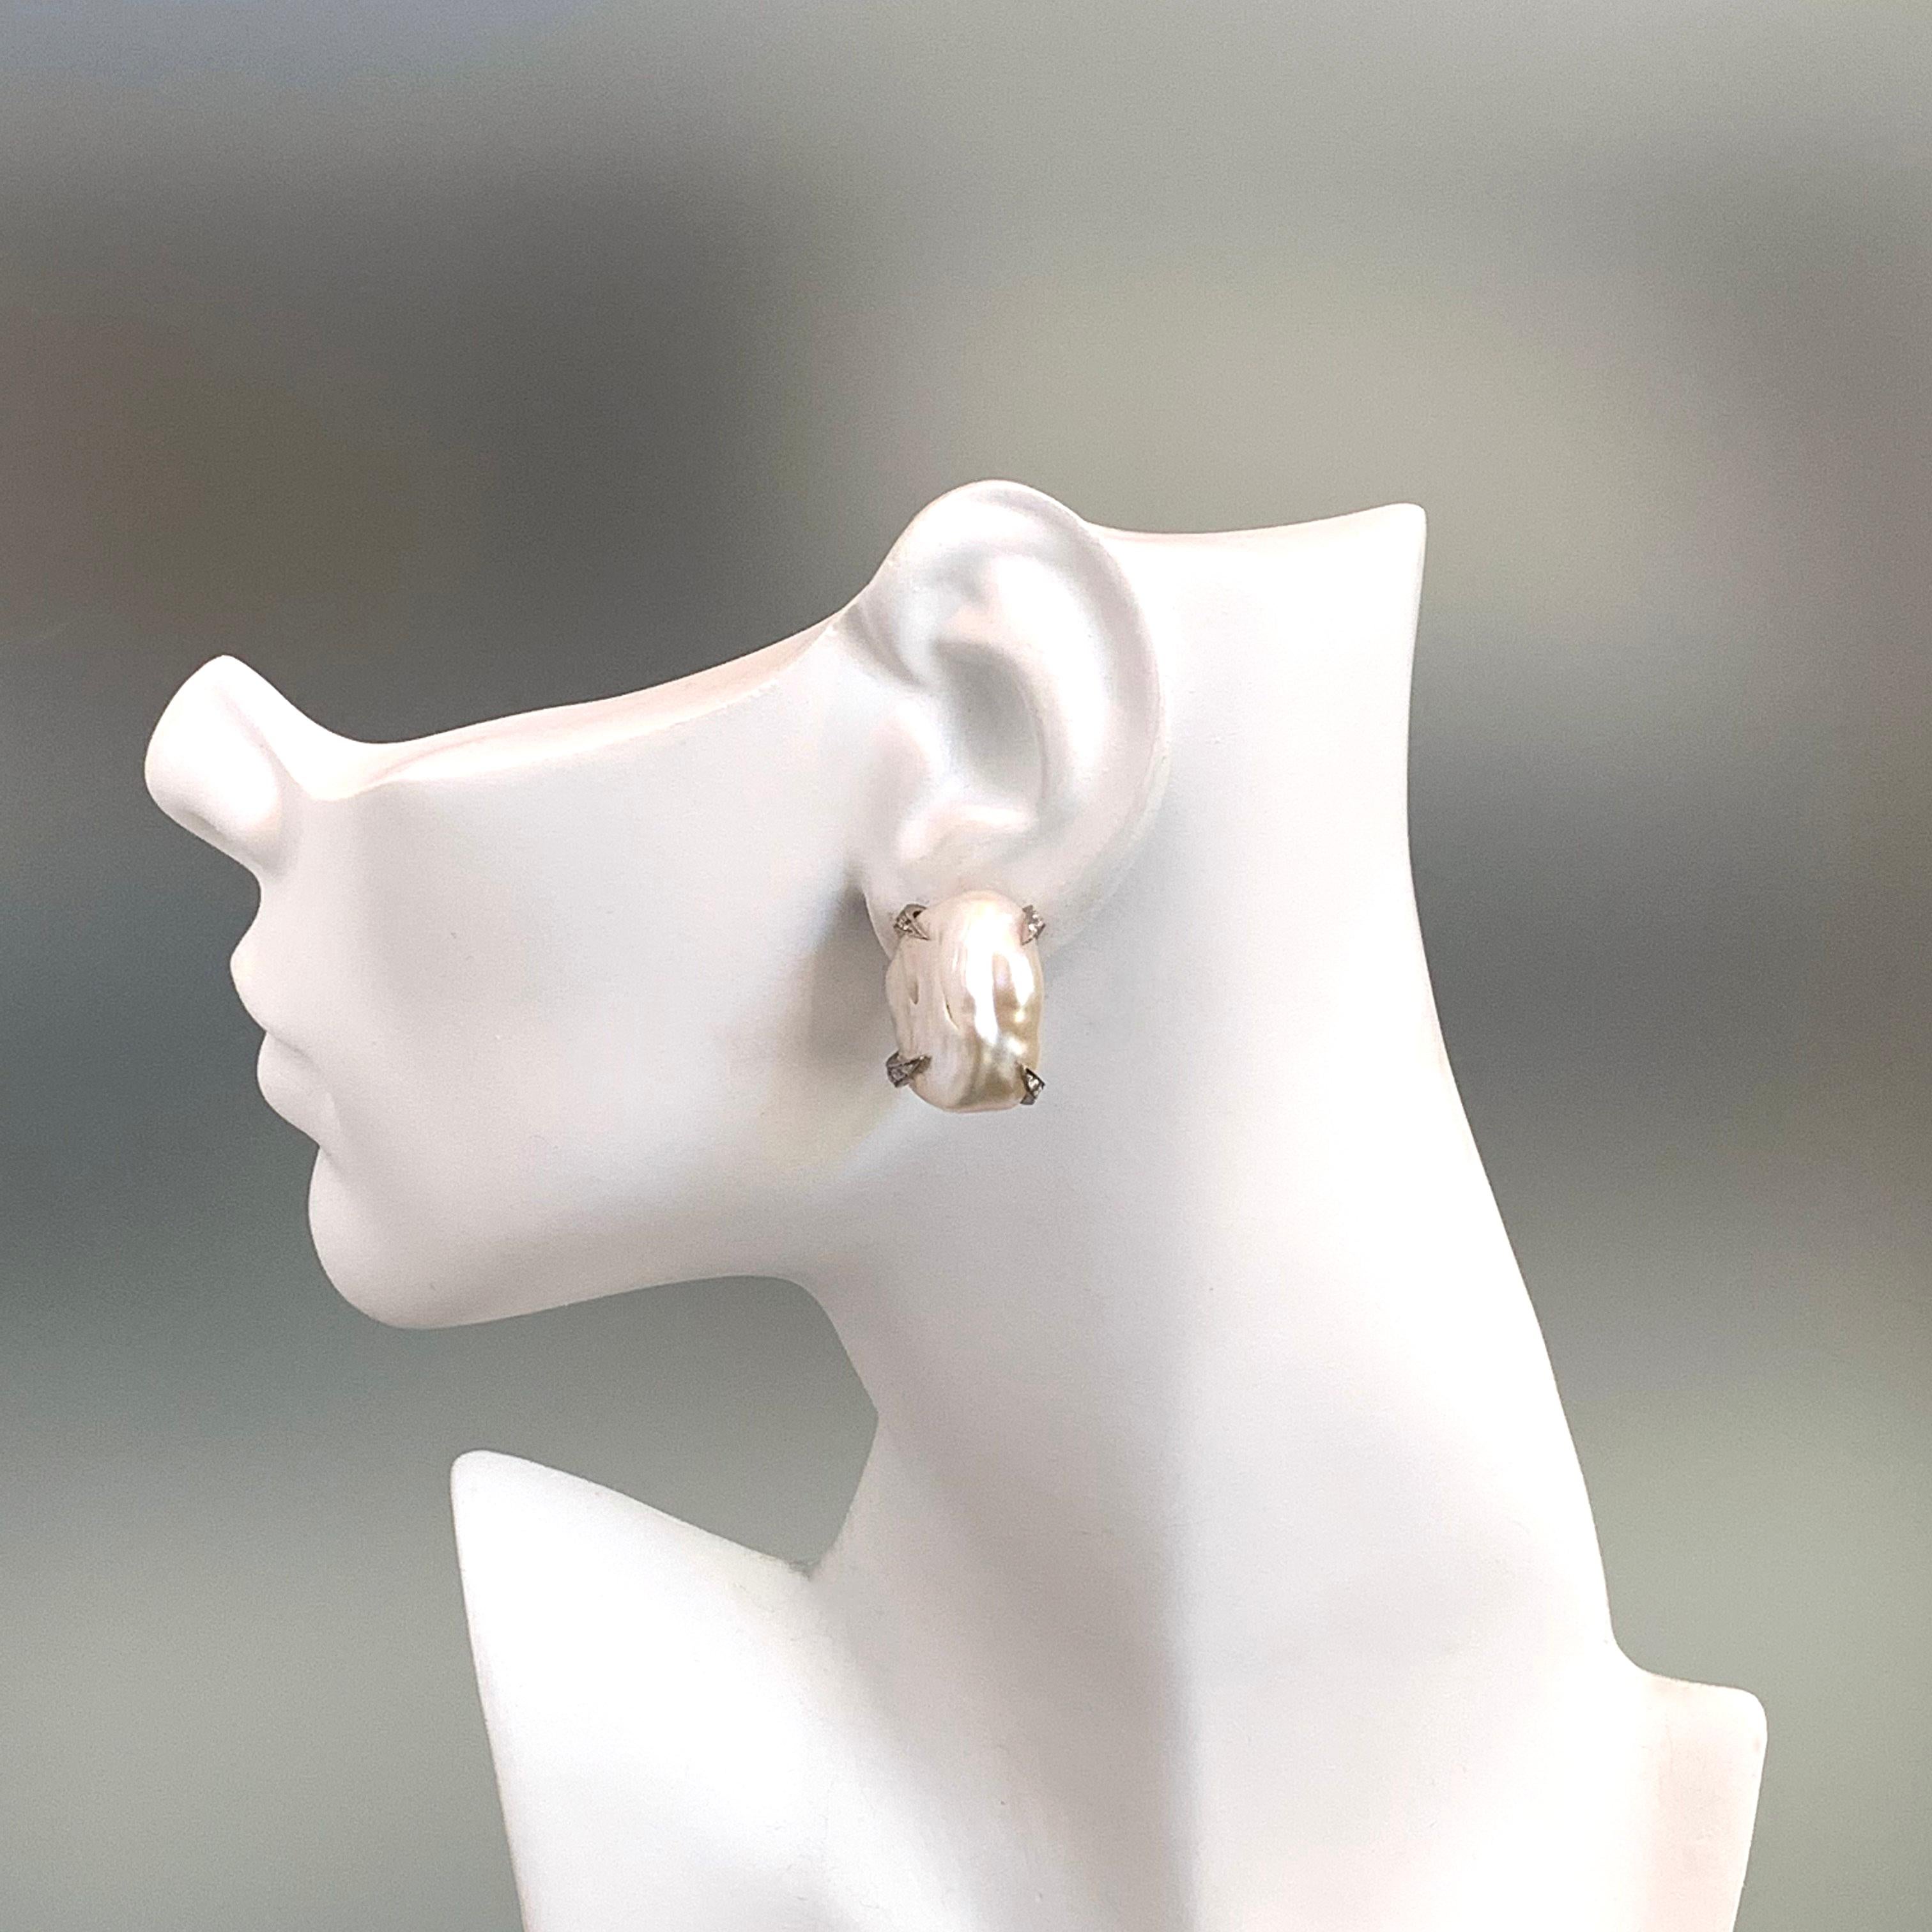 18mm stud earrings